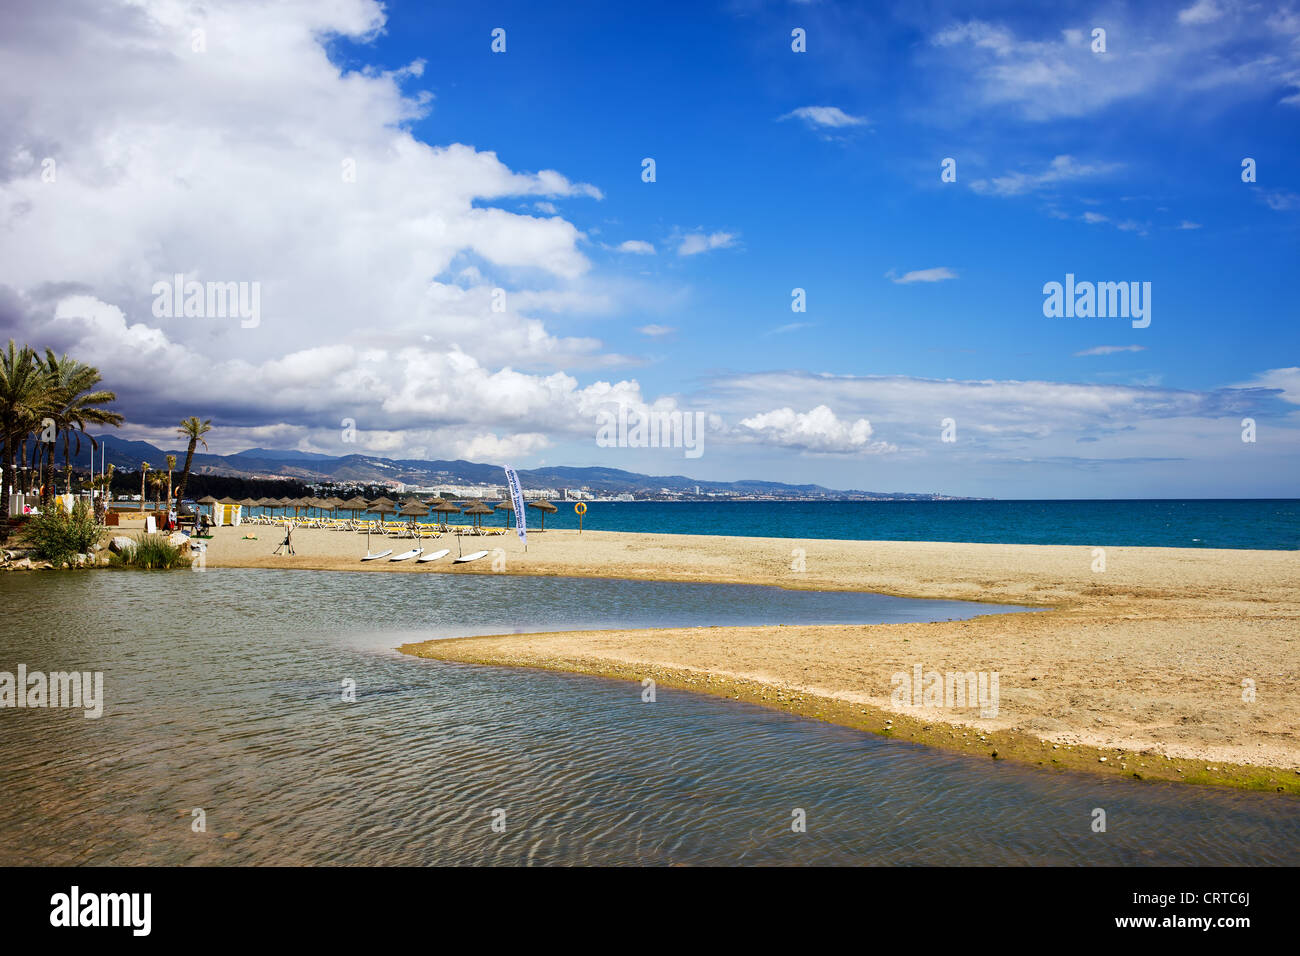 Plage, rivière et de la mer locations de paysage sur Costa del Sol en Espagne, situé entre Marbella et Puerto Banus. Banque D'Images